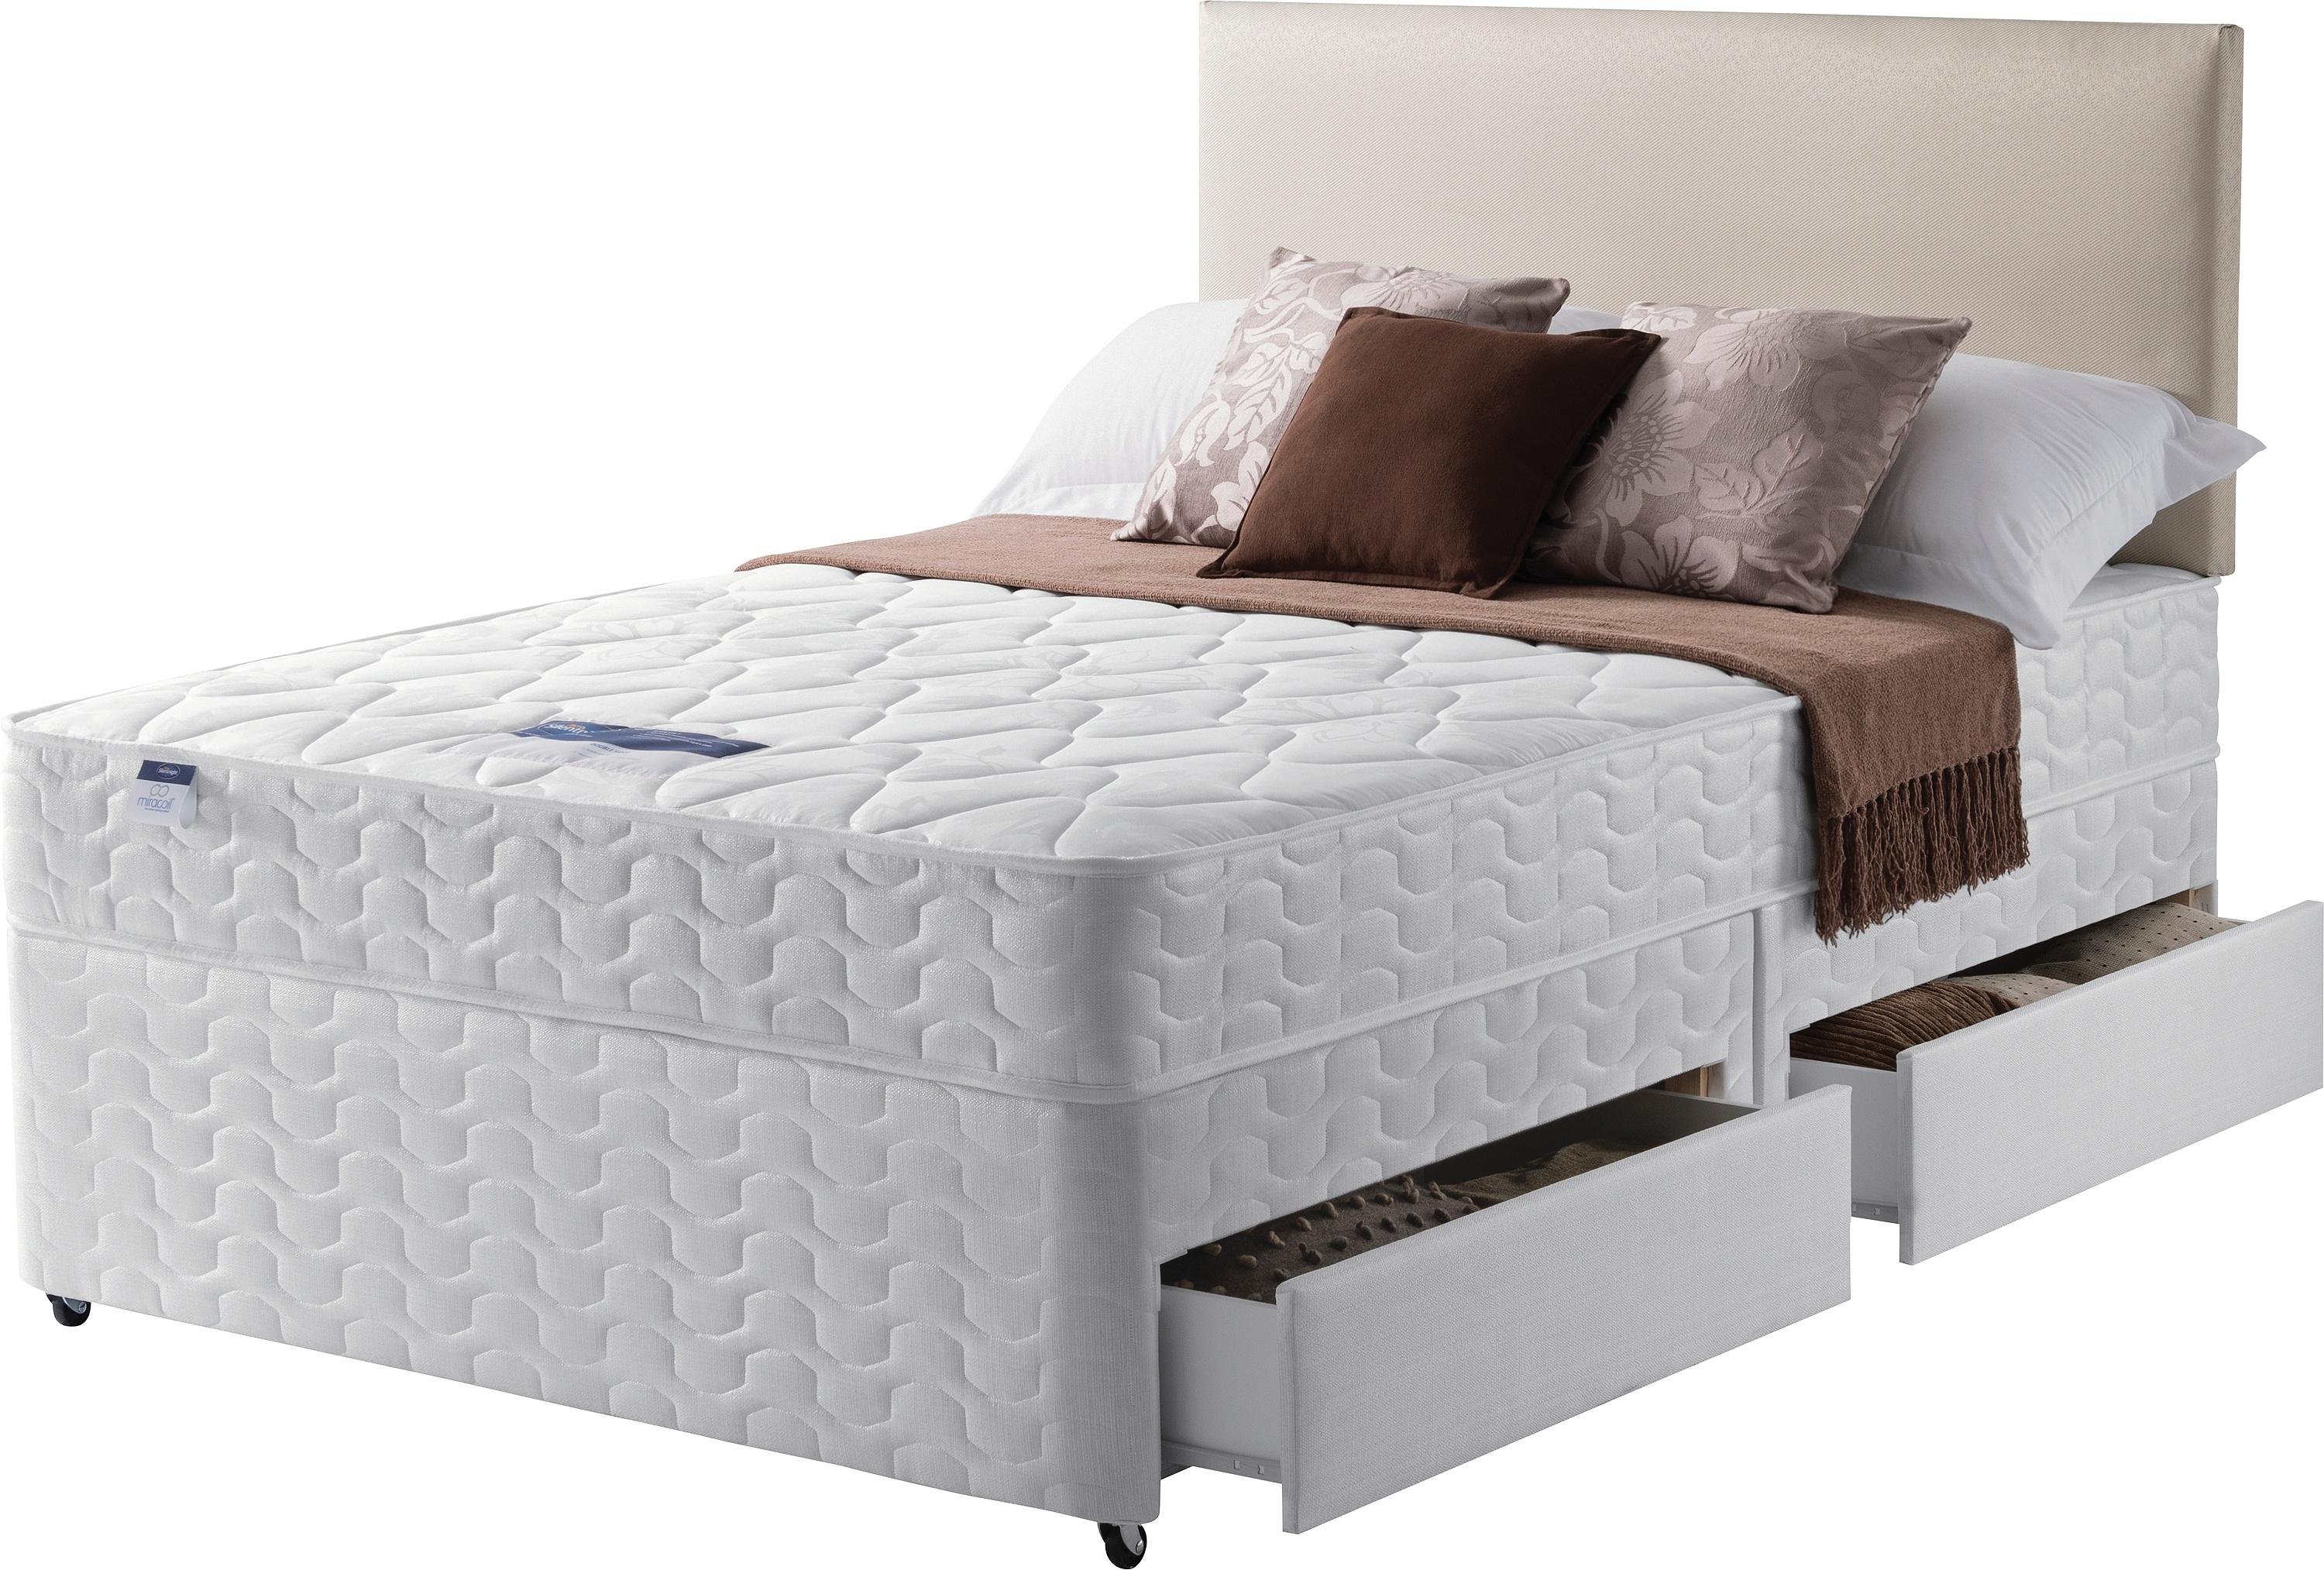 silentnight mink divan bed with miracoil mattress